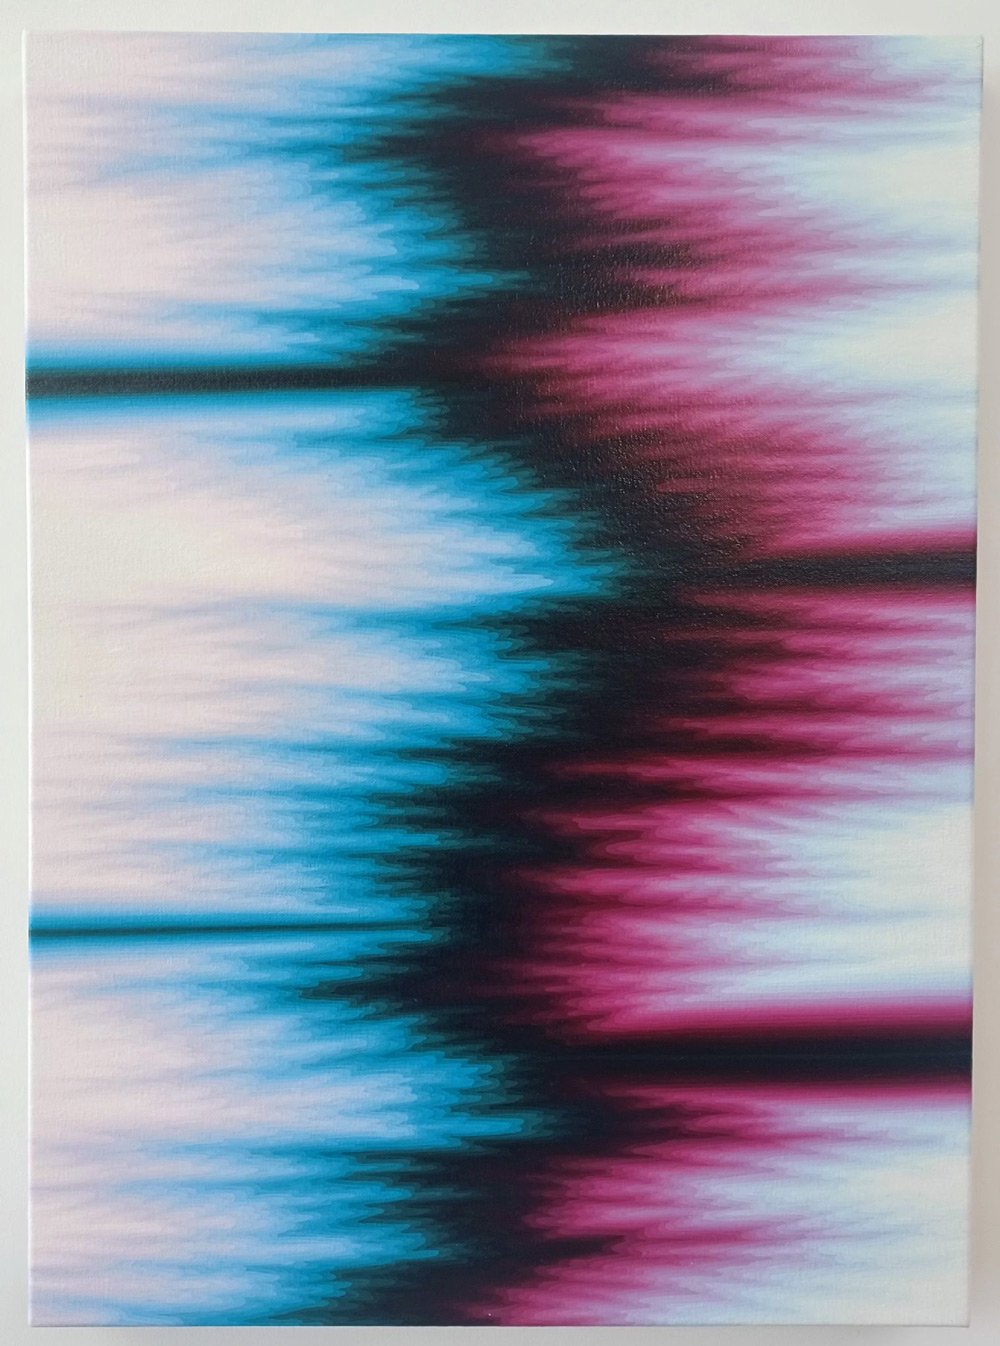   Karine Fréchette  -  Réverbérations 3 , 2023 Acrylique sur toile / Acrylic on canvas 30 x 22 in. (76.2 x 55.9 cm) 